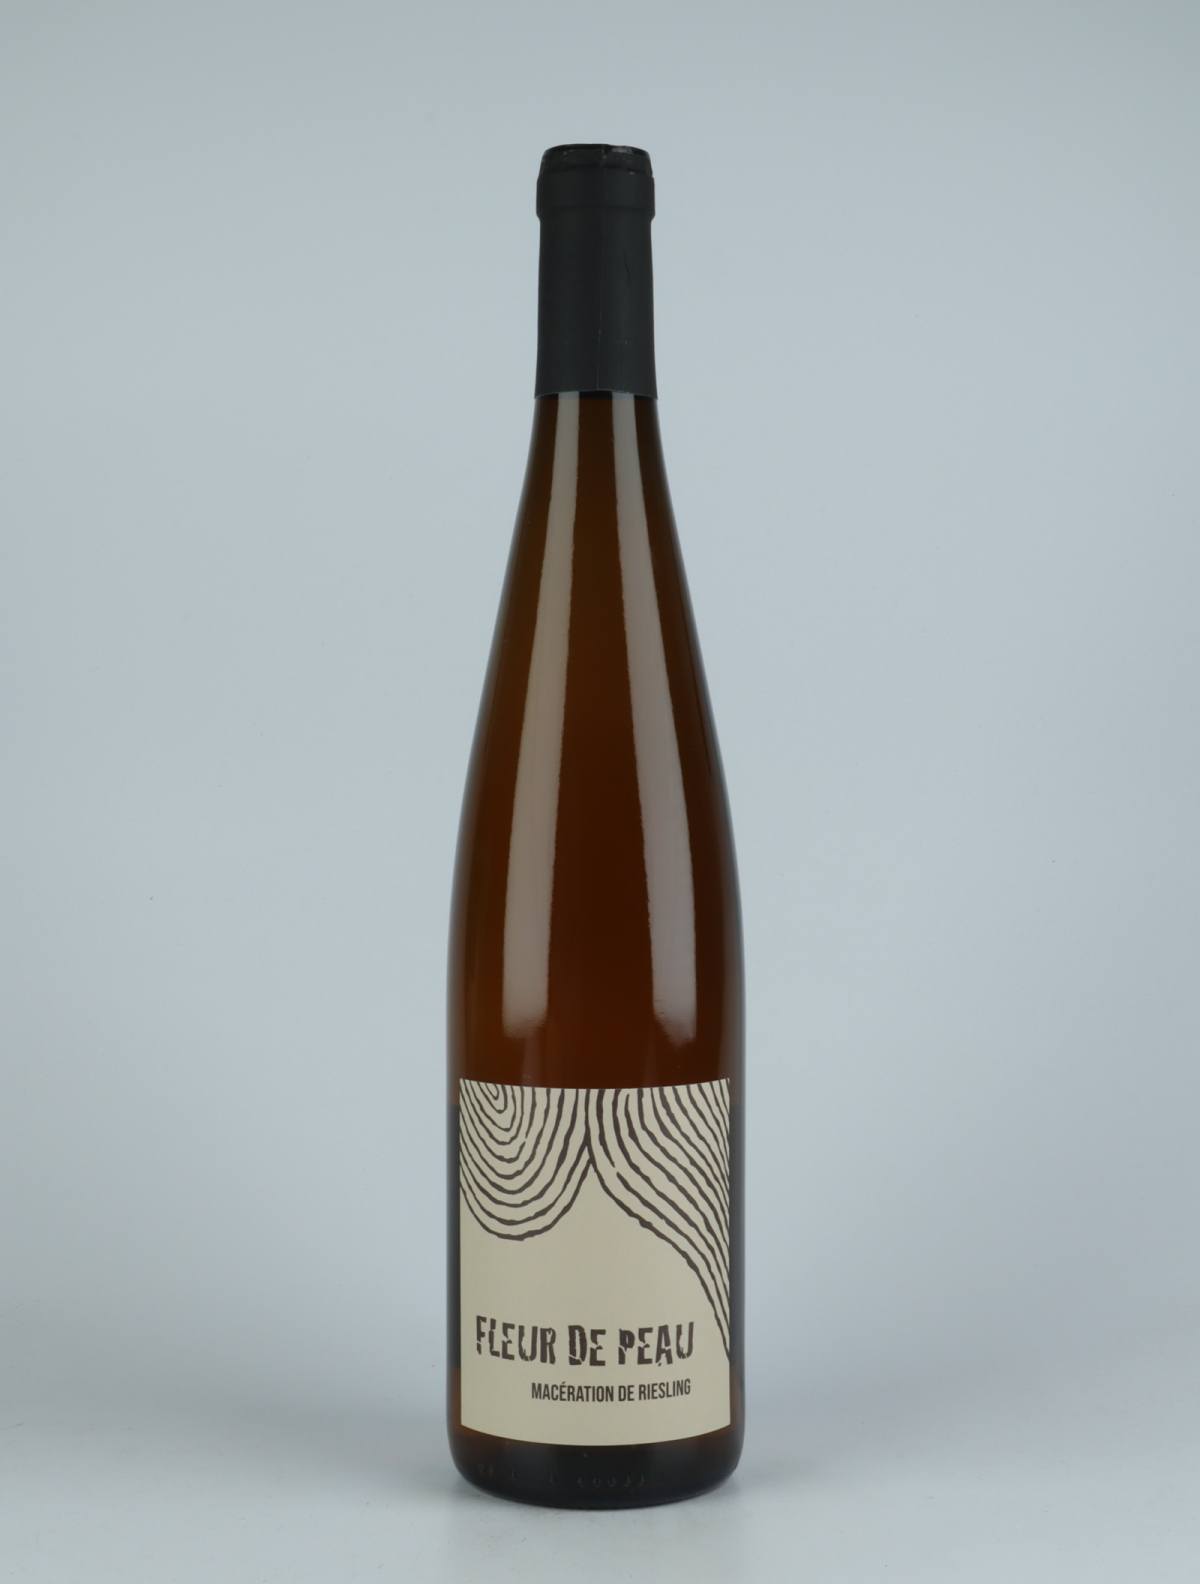 A bottle 2020 Fleur de Peau Orange wine from Ruhlmann Dirringer, Alsace in France